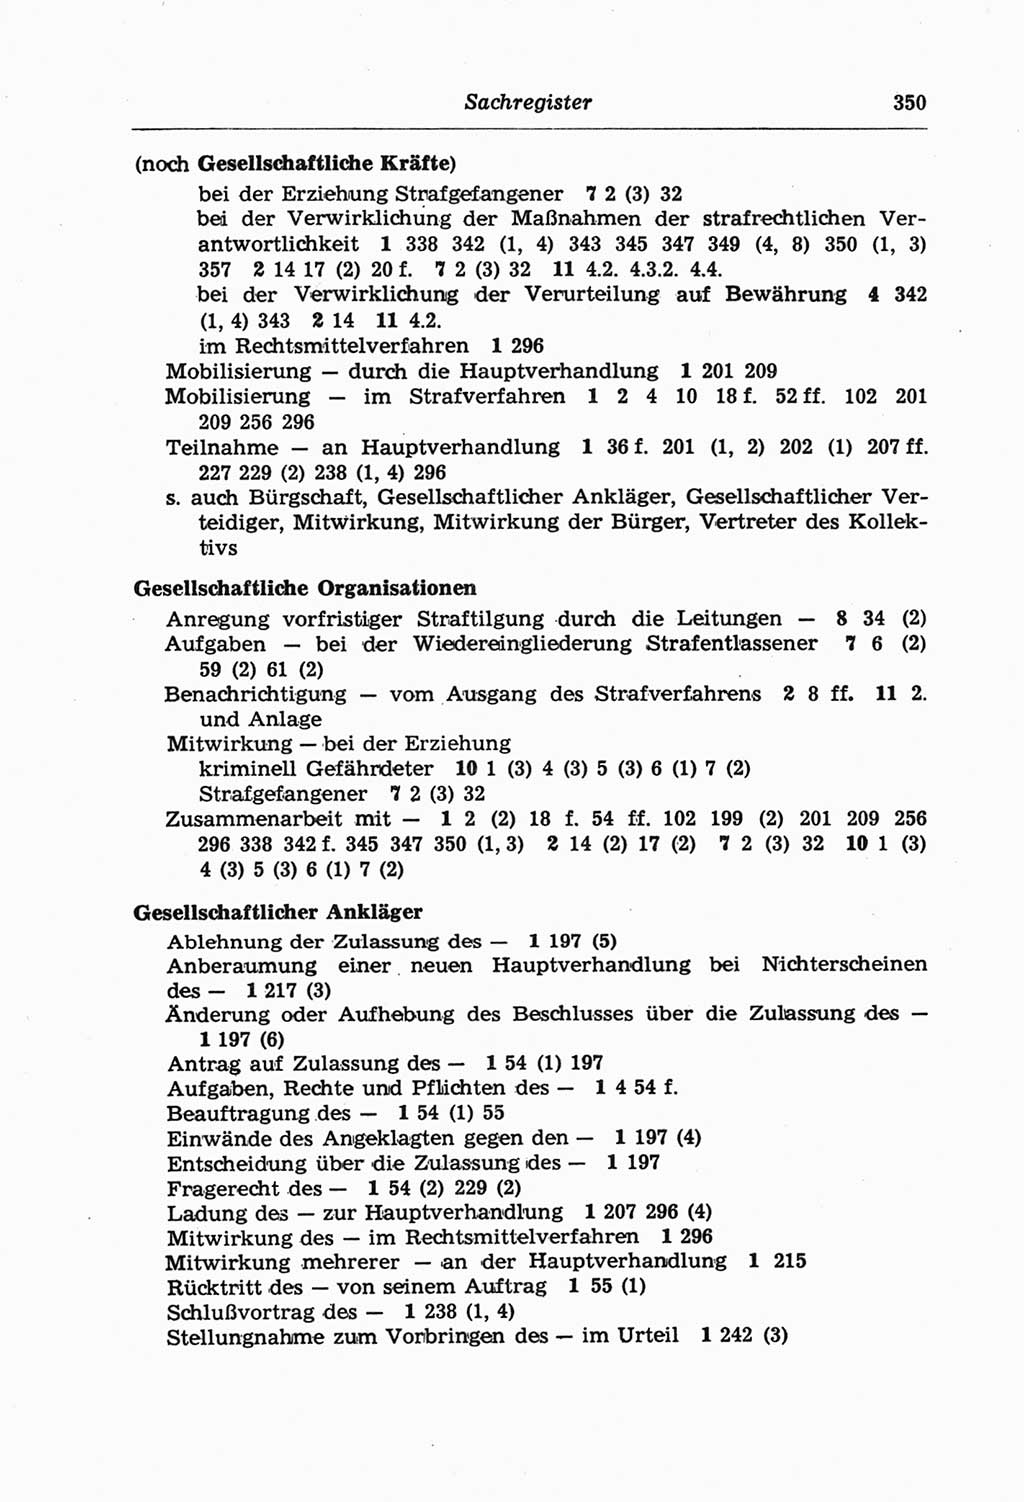 Strafprozeßordnung (StPO) der Deutschen Demokratischen Republik (DDR) und angrenzende Gesetze und Bestimmungen 1968, Seite 350 (StPO Ges. Bstgn. DDR 1968, S. 350)